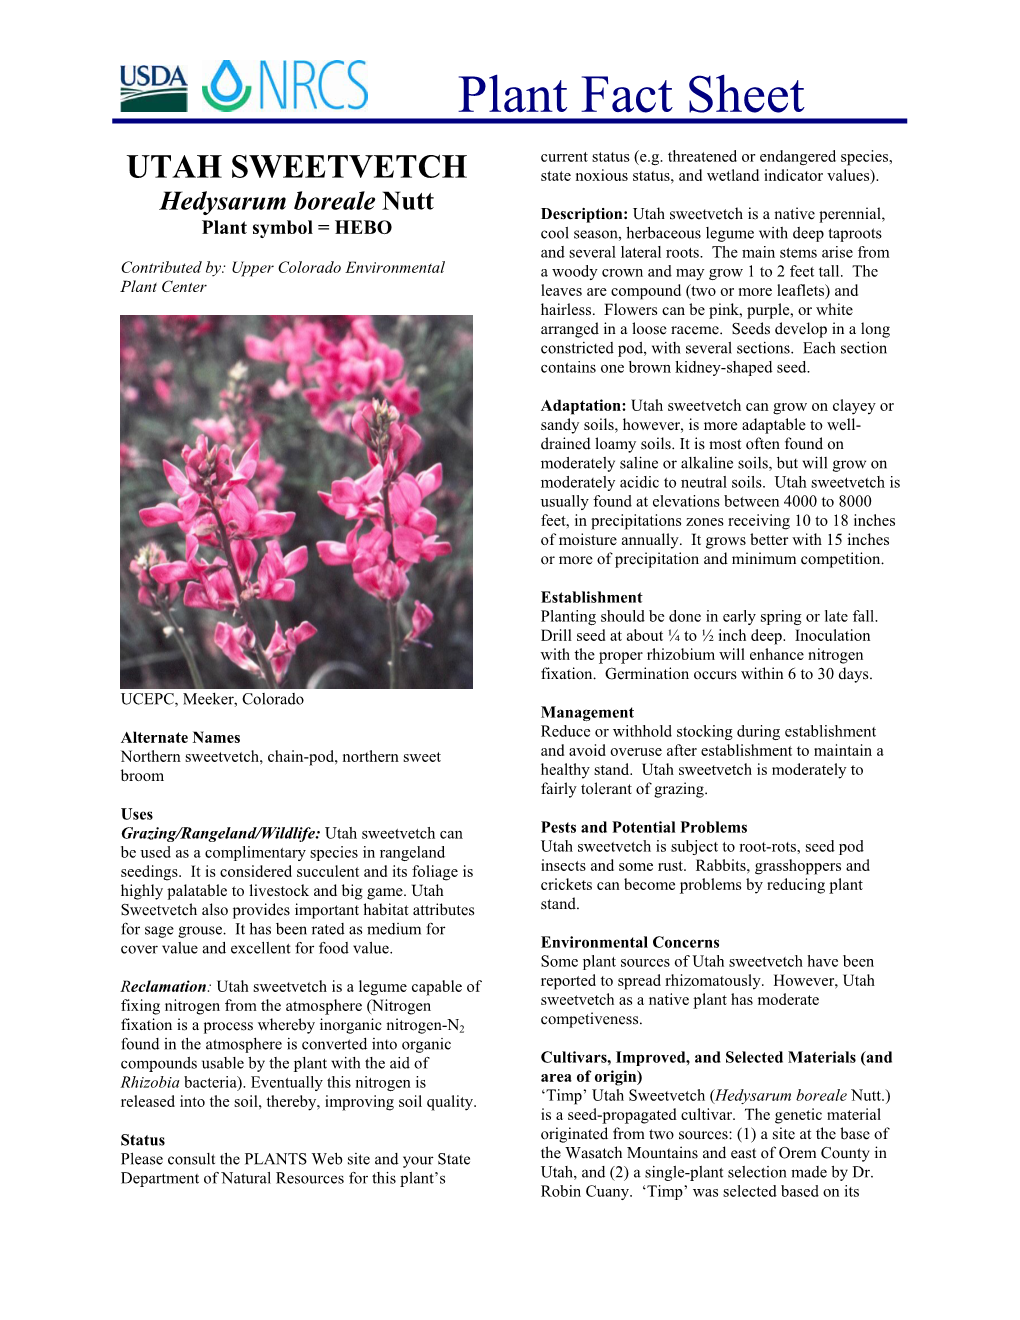 Utah Sweetvetch Plant Fact Sheet